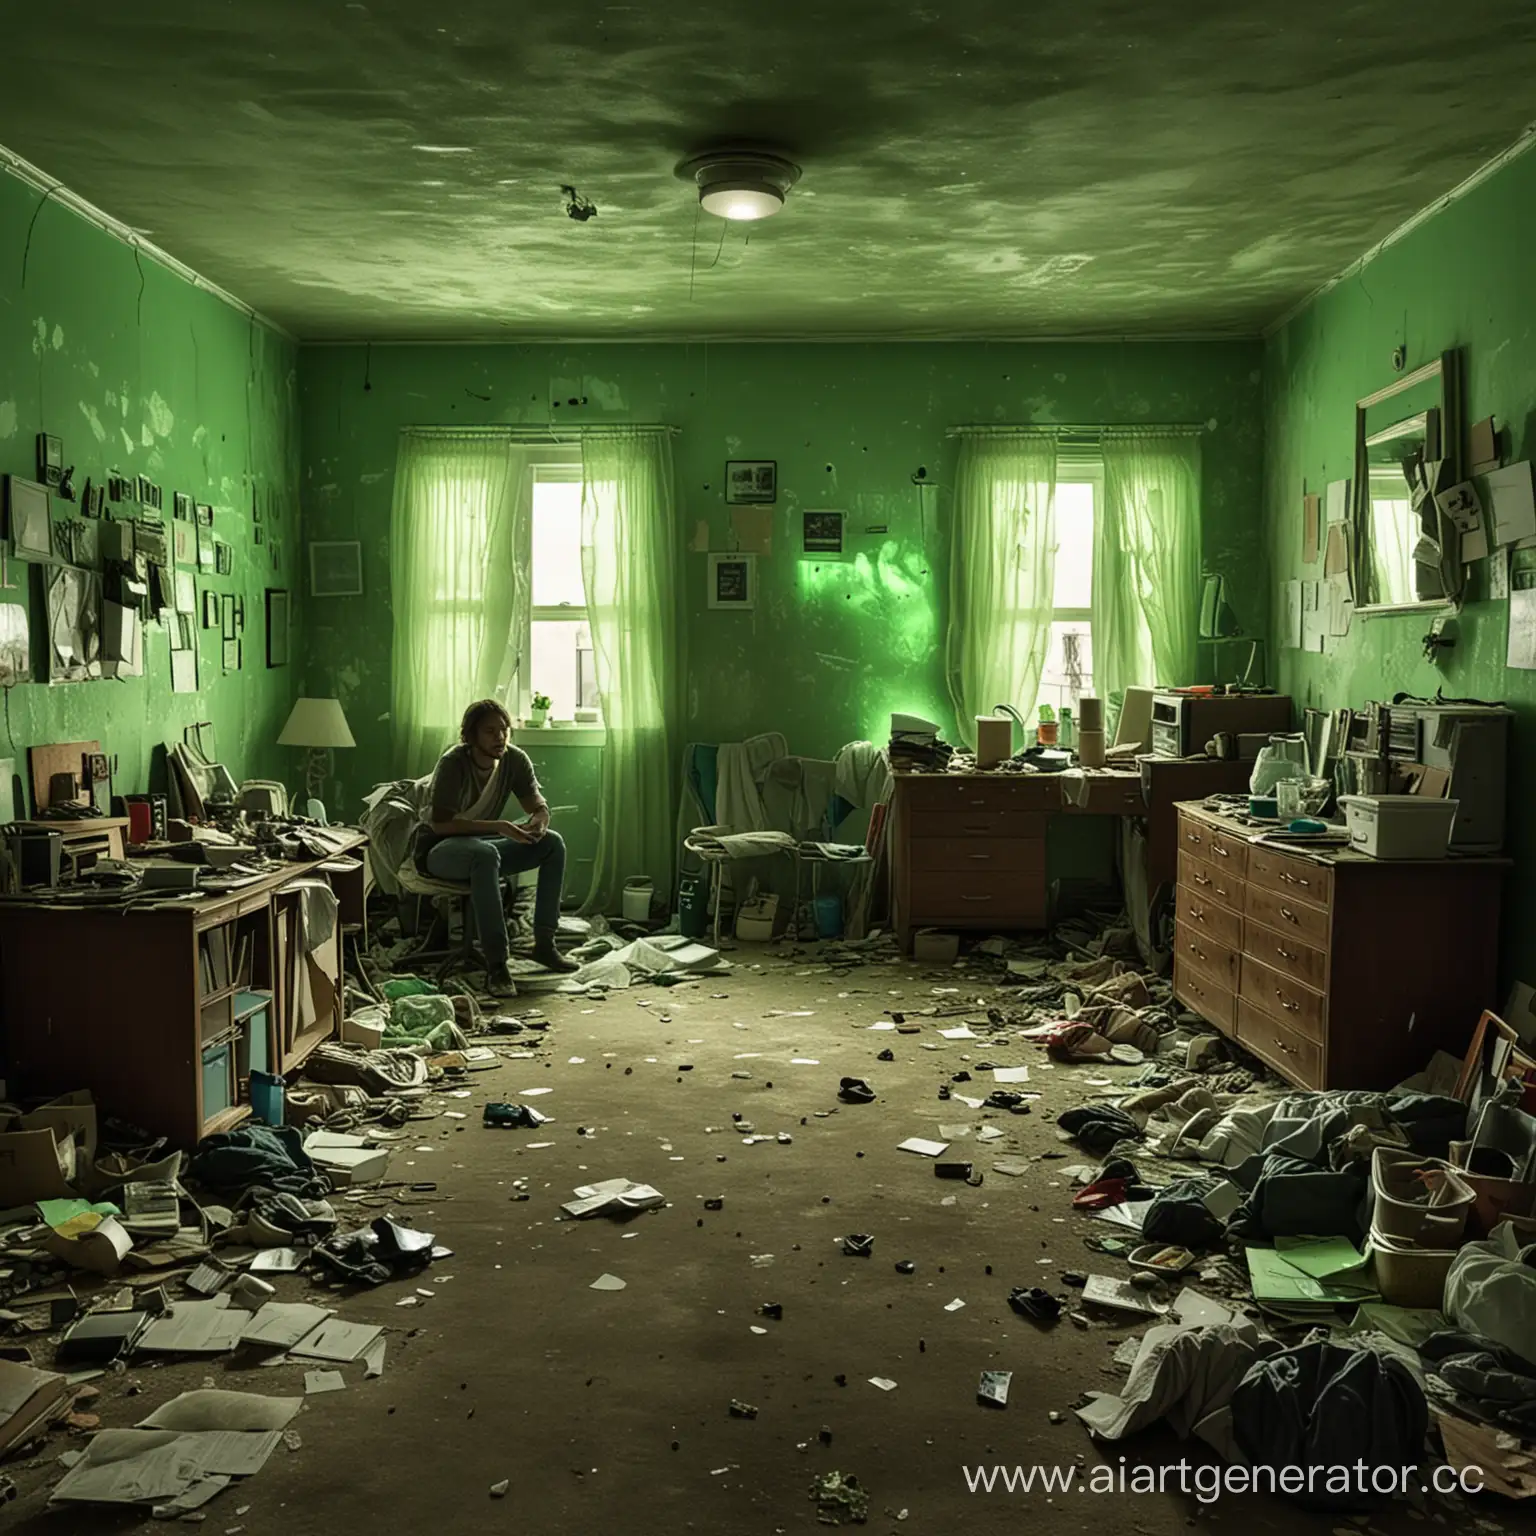 нарисуй комнату с грязно-зеленым освещением, по всей комнате хлам, а по середине на полу сидит человек 


